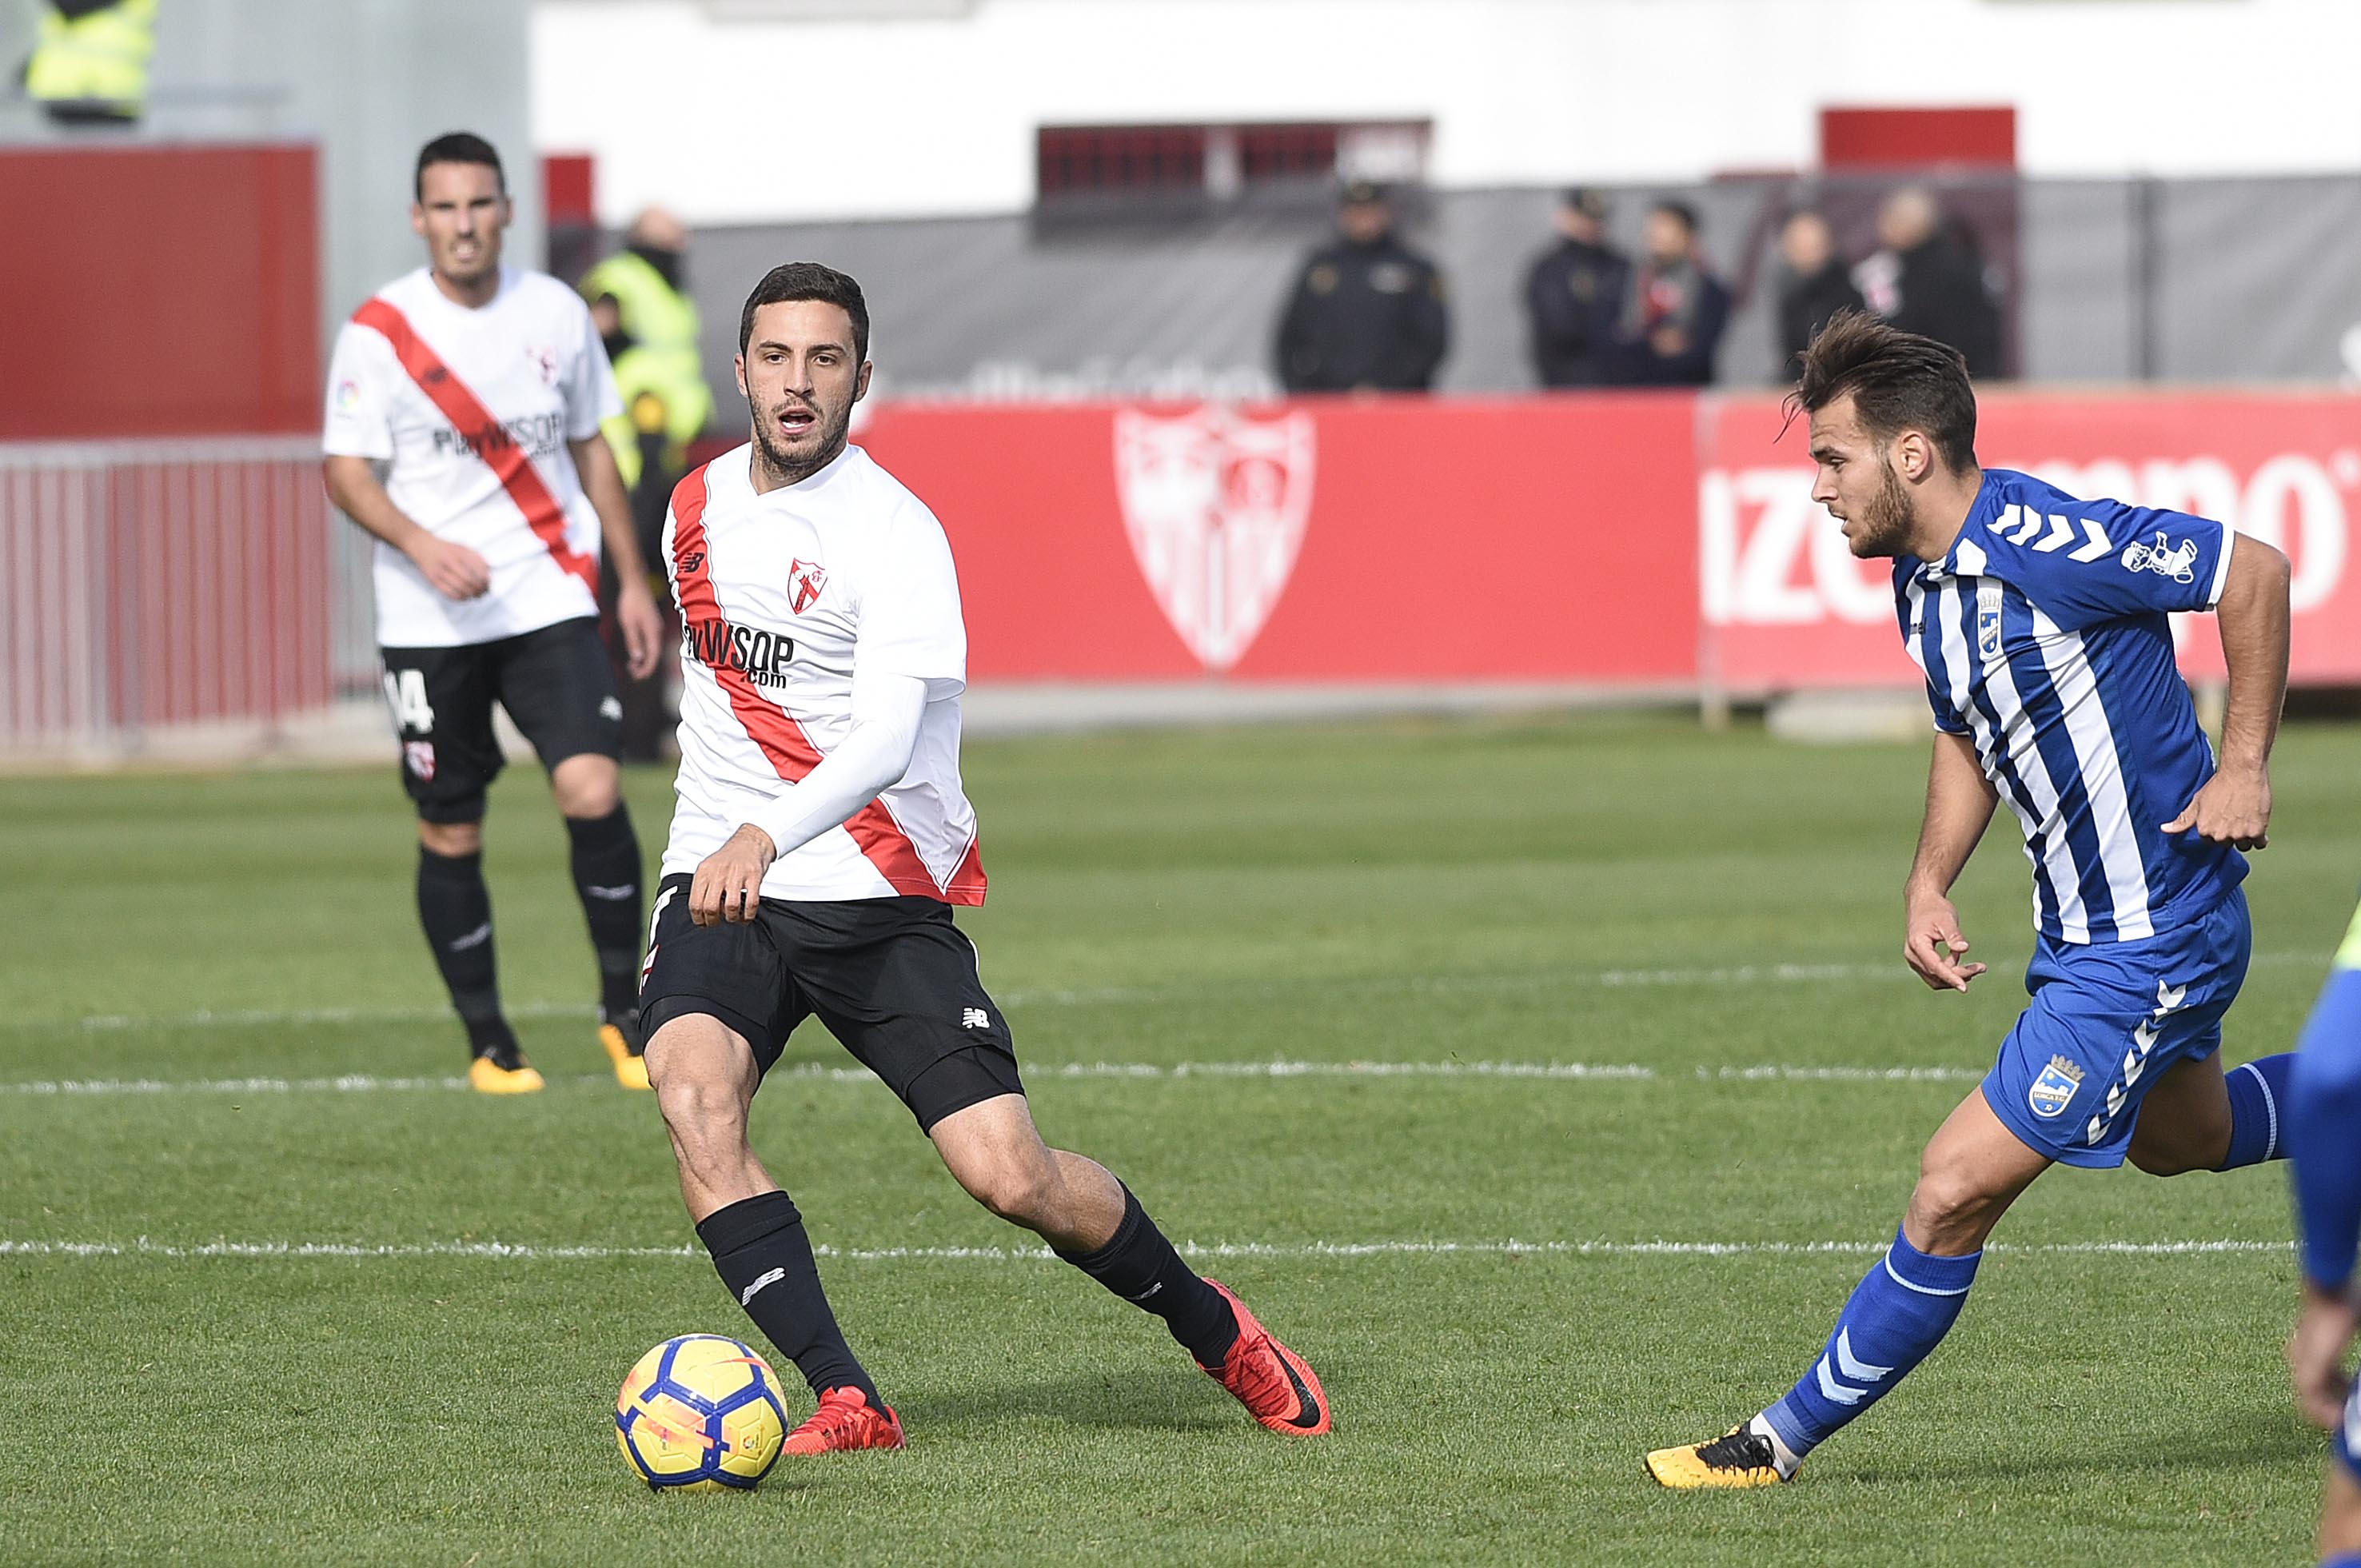 Aburjania del Sevilla Atlético ante el Lorca FC